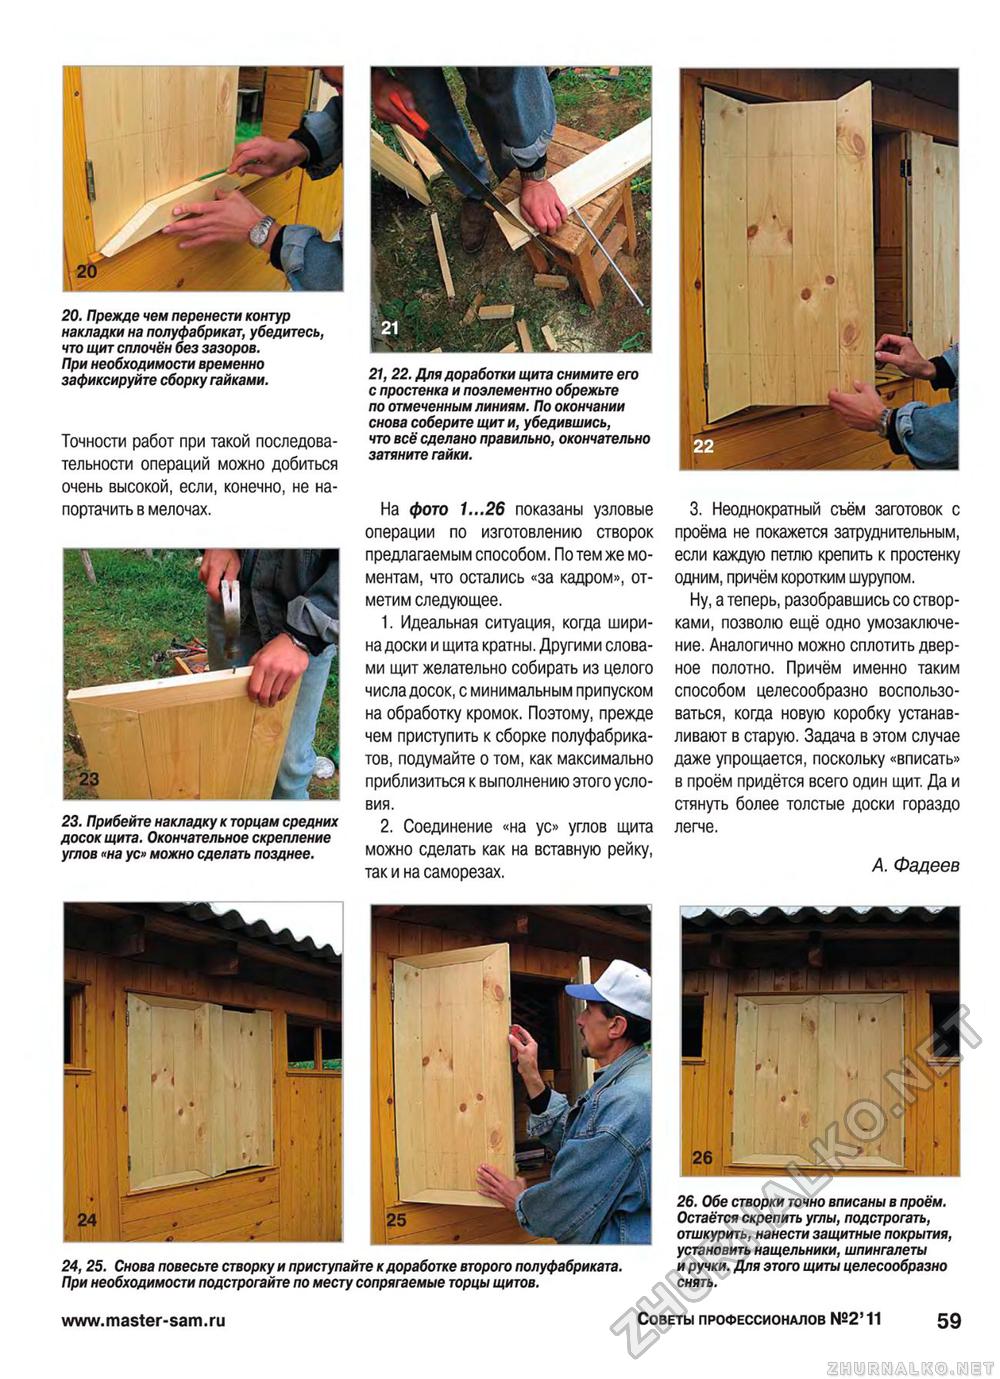 Советы профессионалов 2011-02, страница 59